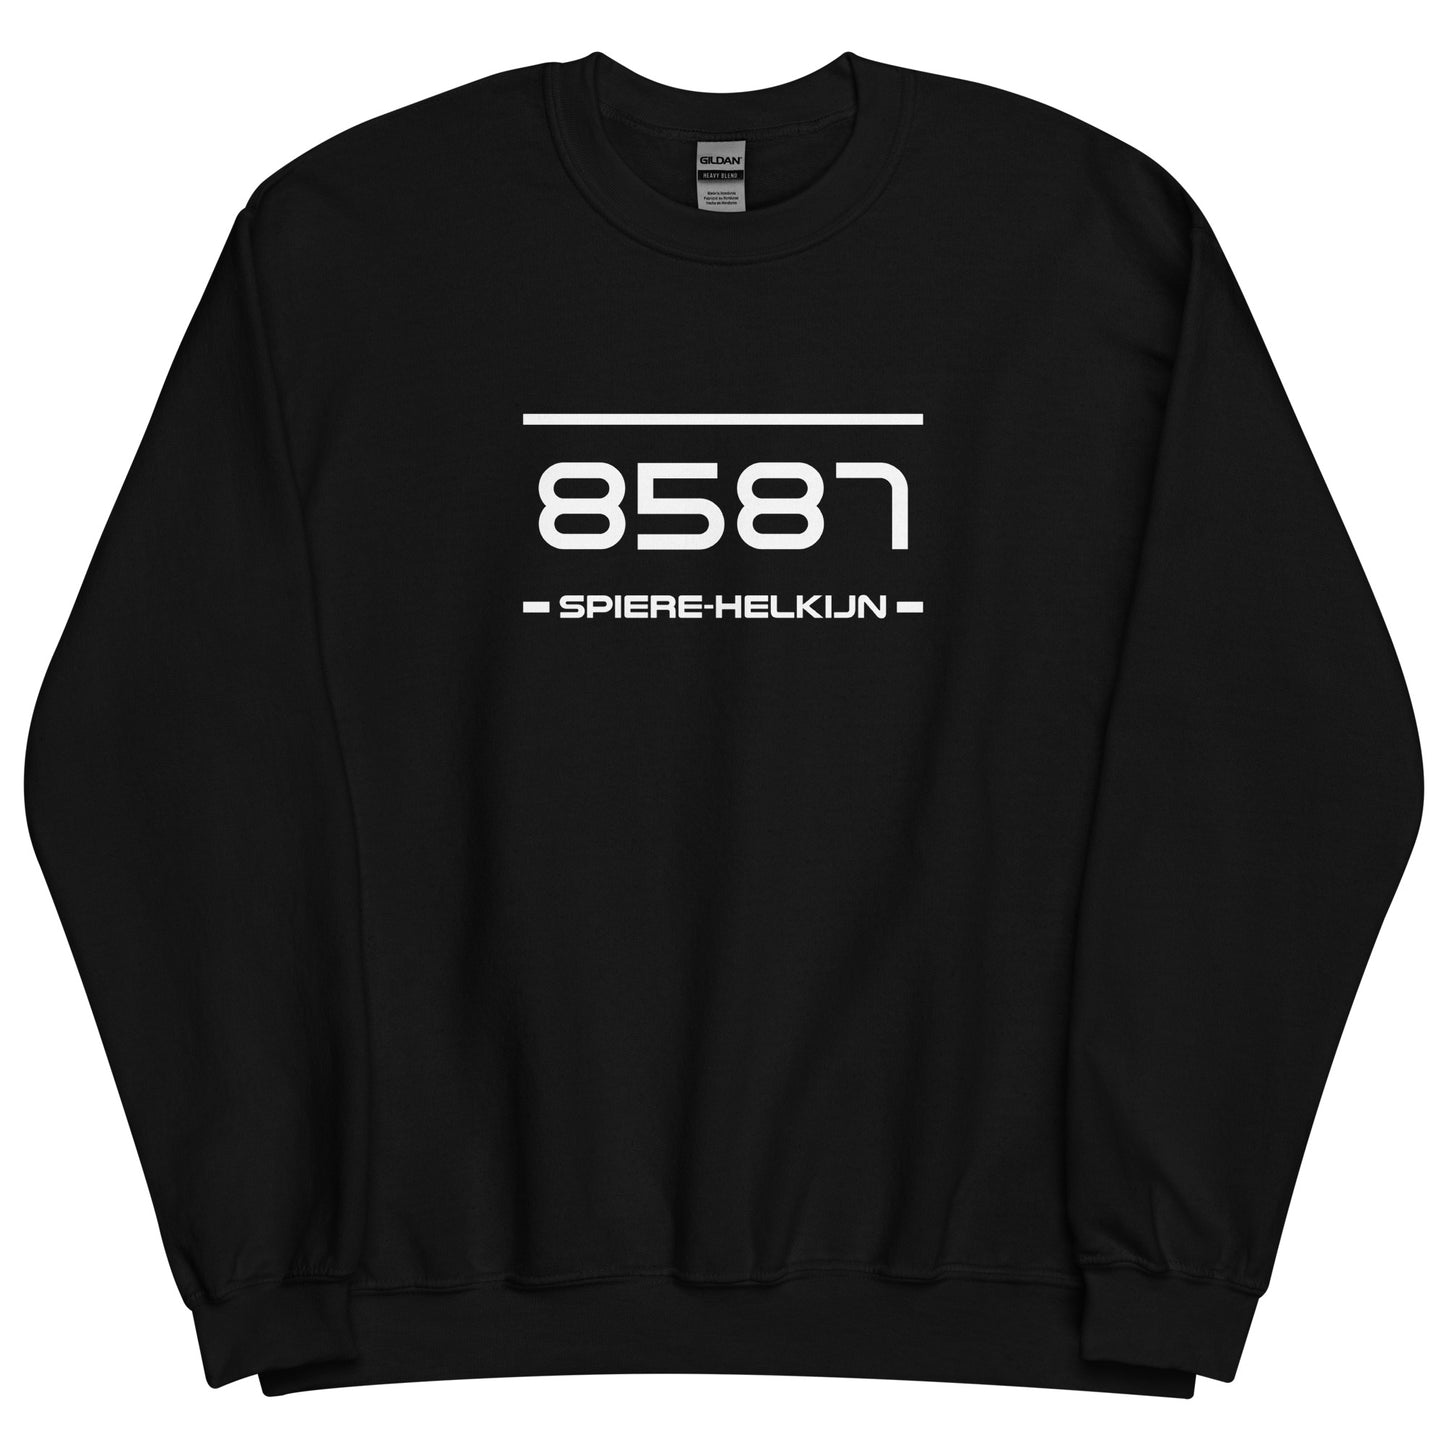 Sweater - 8587 - Spiere-Helkijn (M/V)